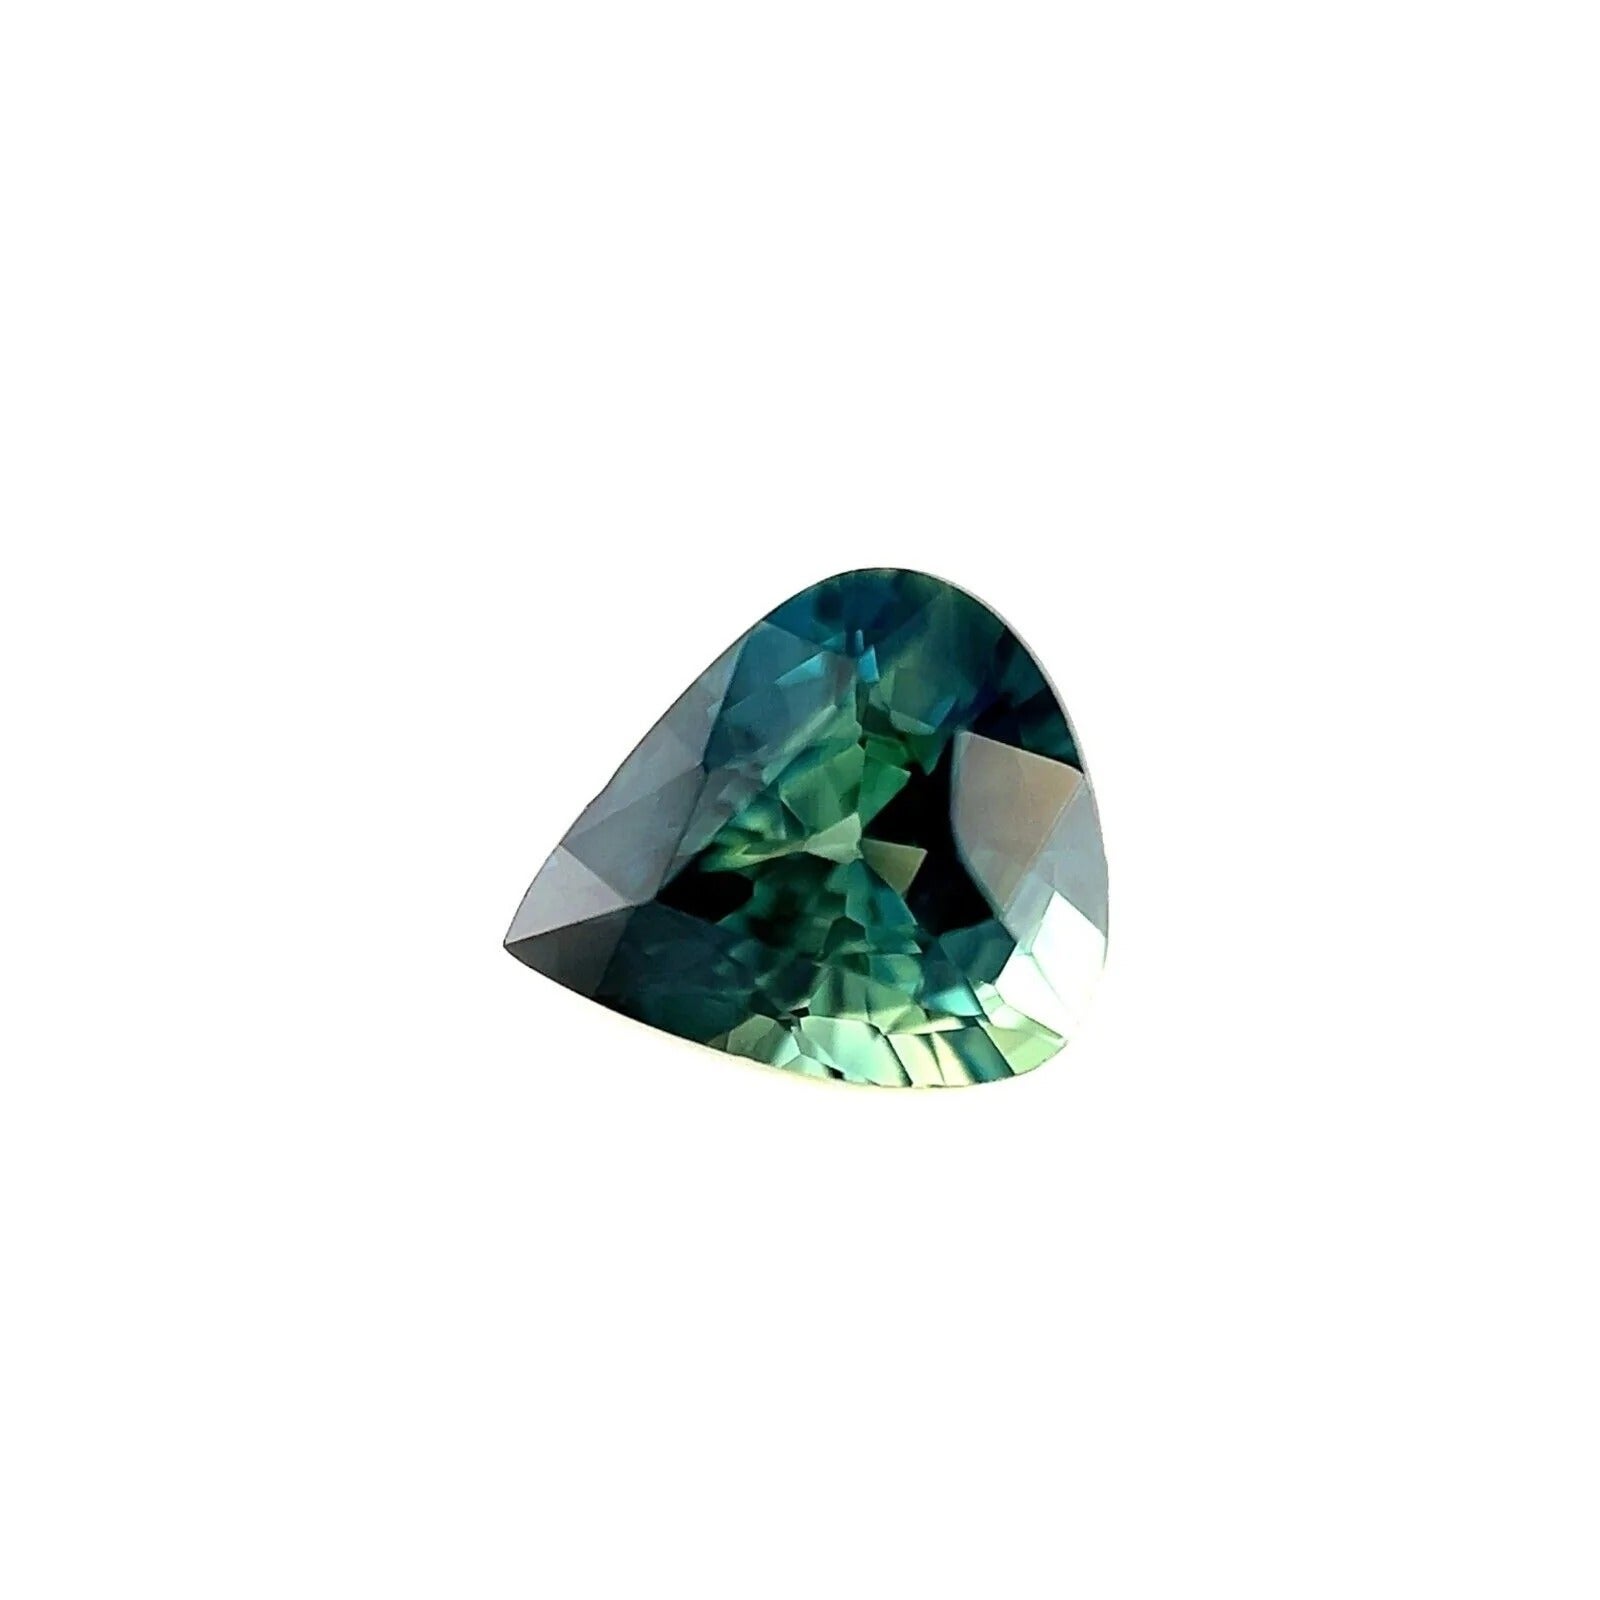 Saphir australien de 0,86 carat de couleur partielle, vert, bleu, taille poire, VVS Gem 6,2 x 5,4 mm